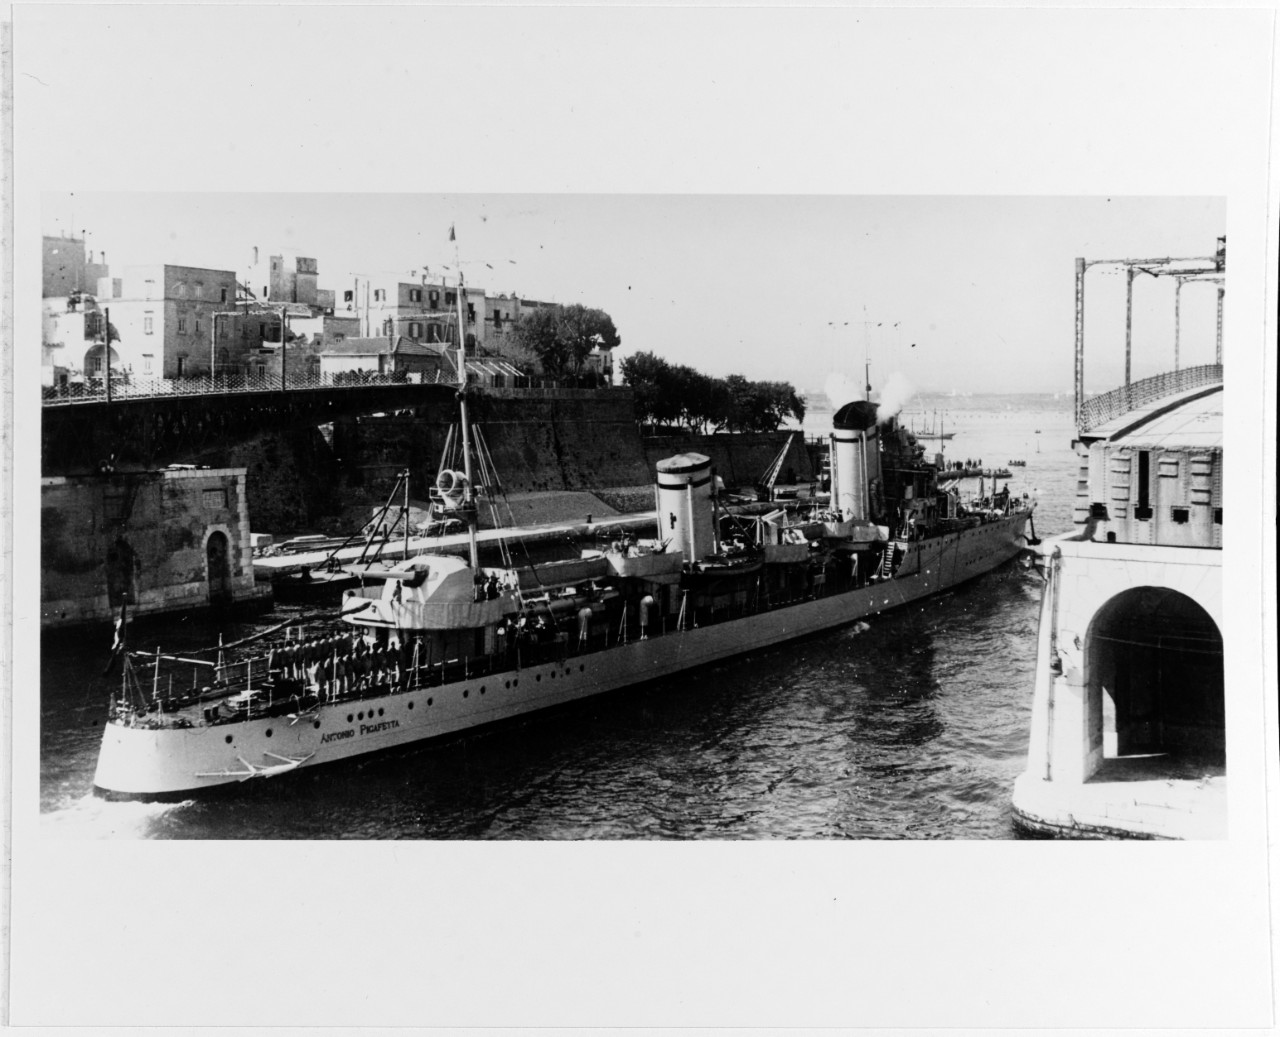 ANTONIO PIGAFETTA (Italian destroyer, 1929-1945)